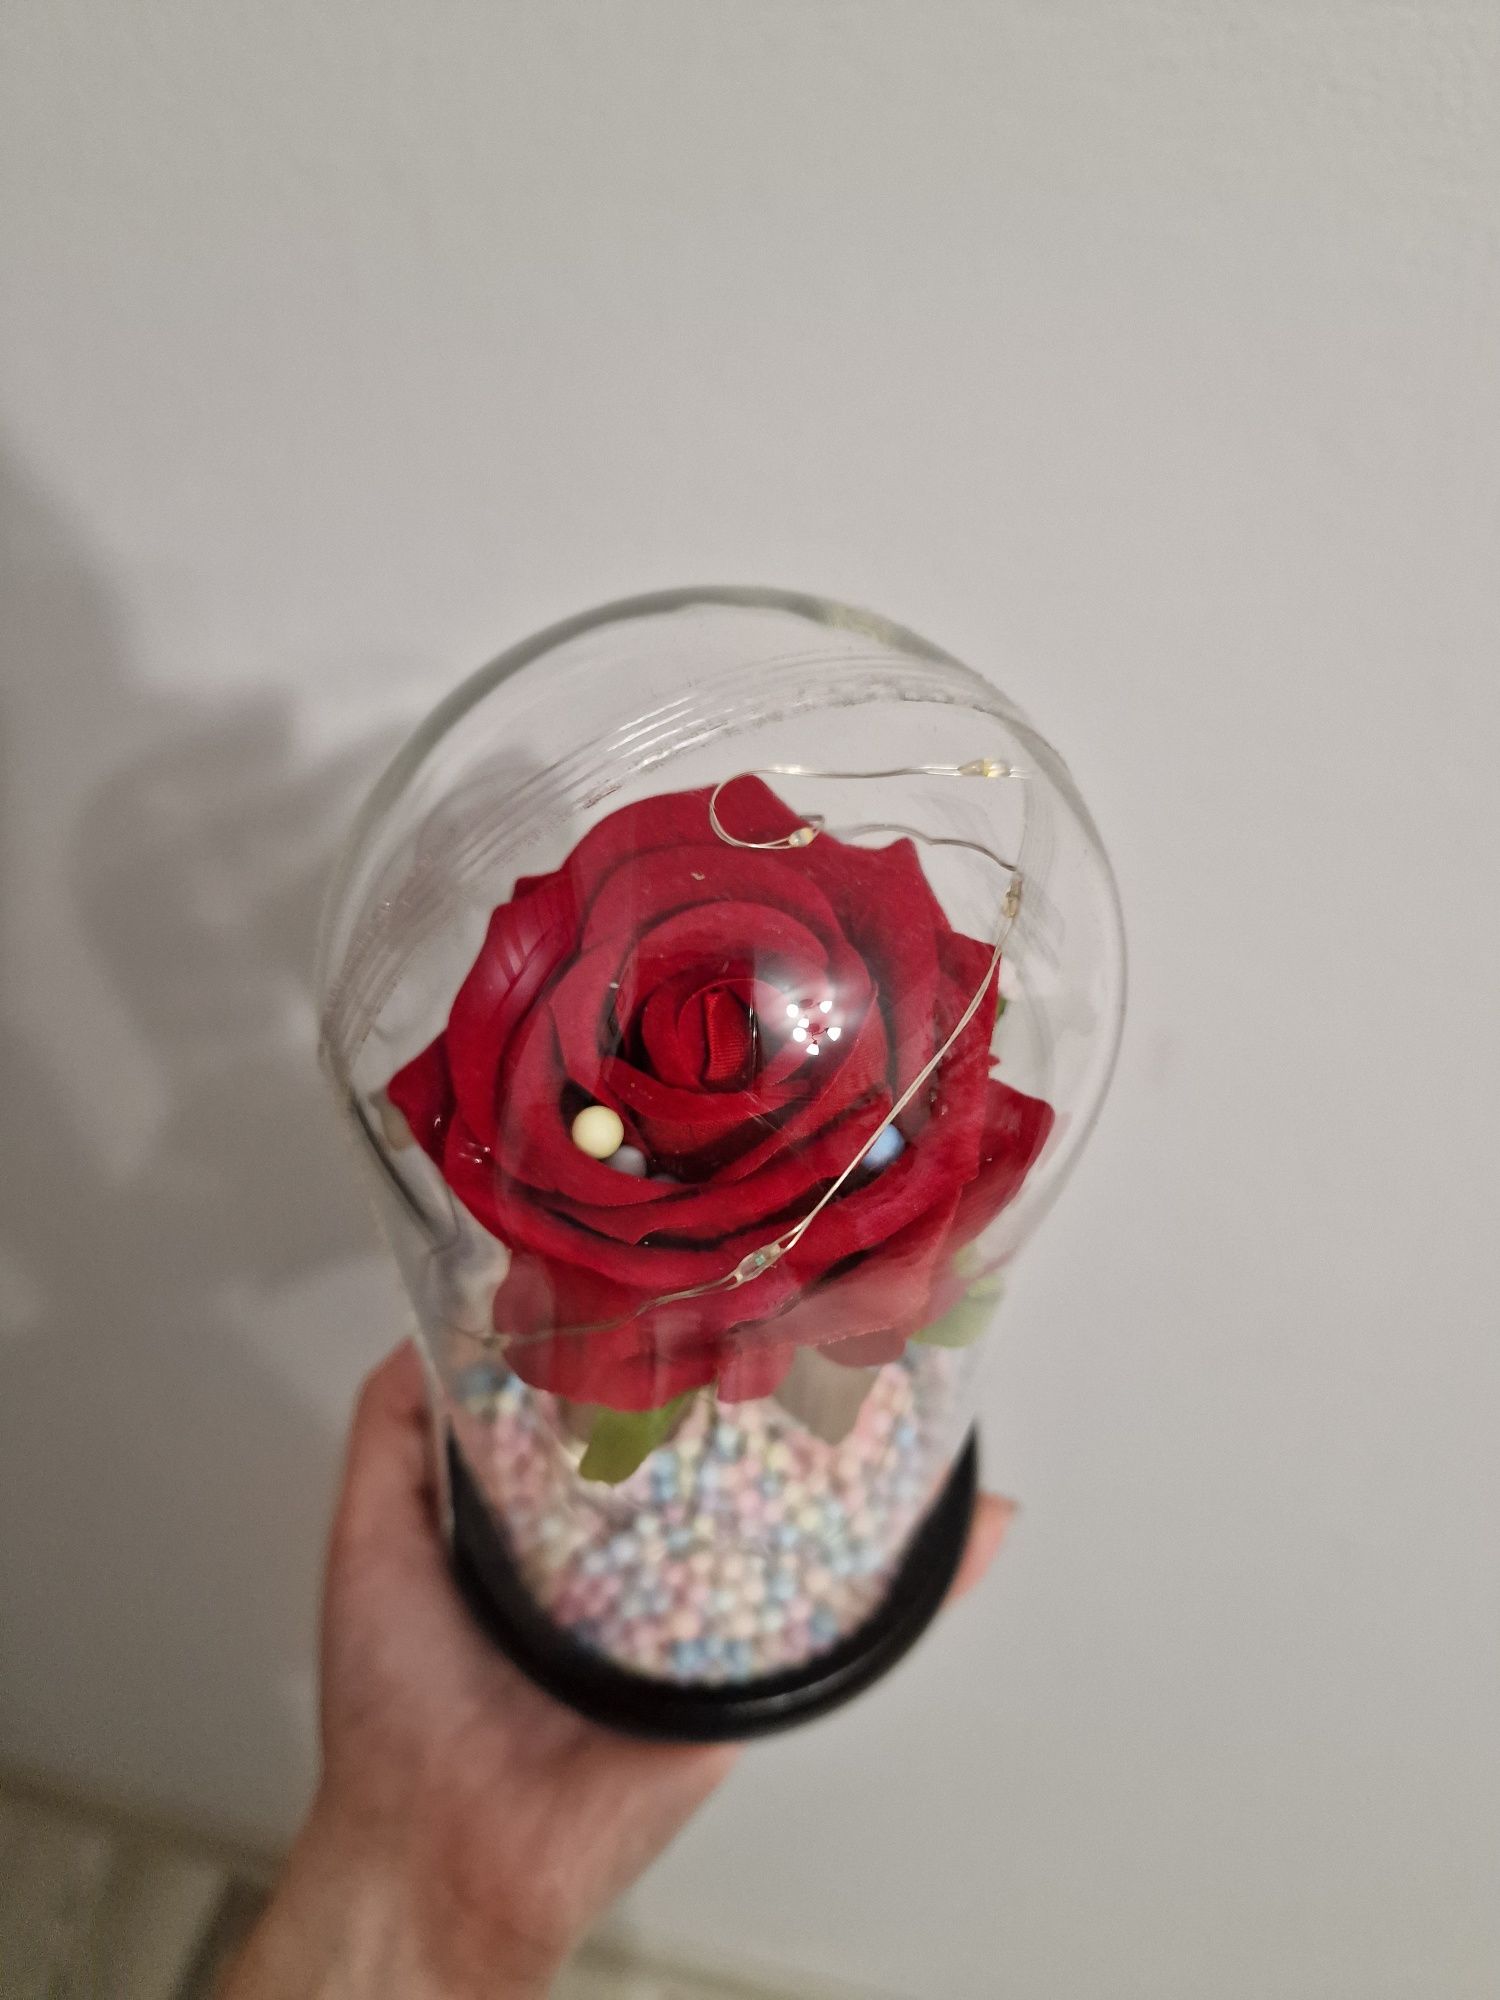 Vând trandafir în sticla